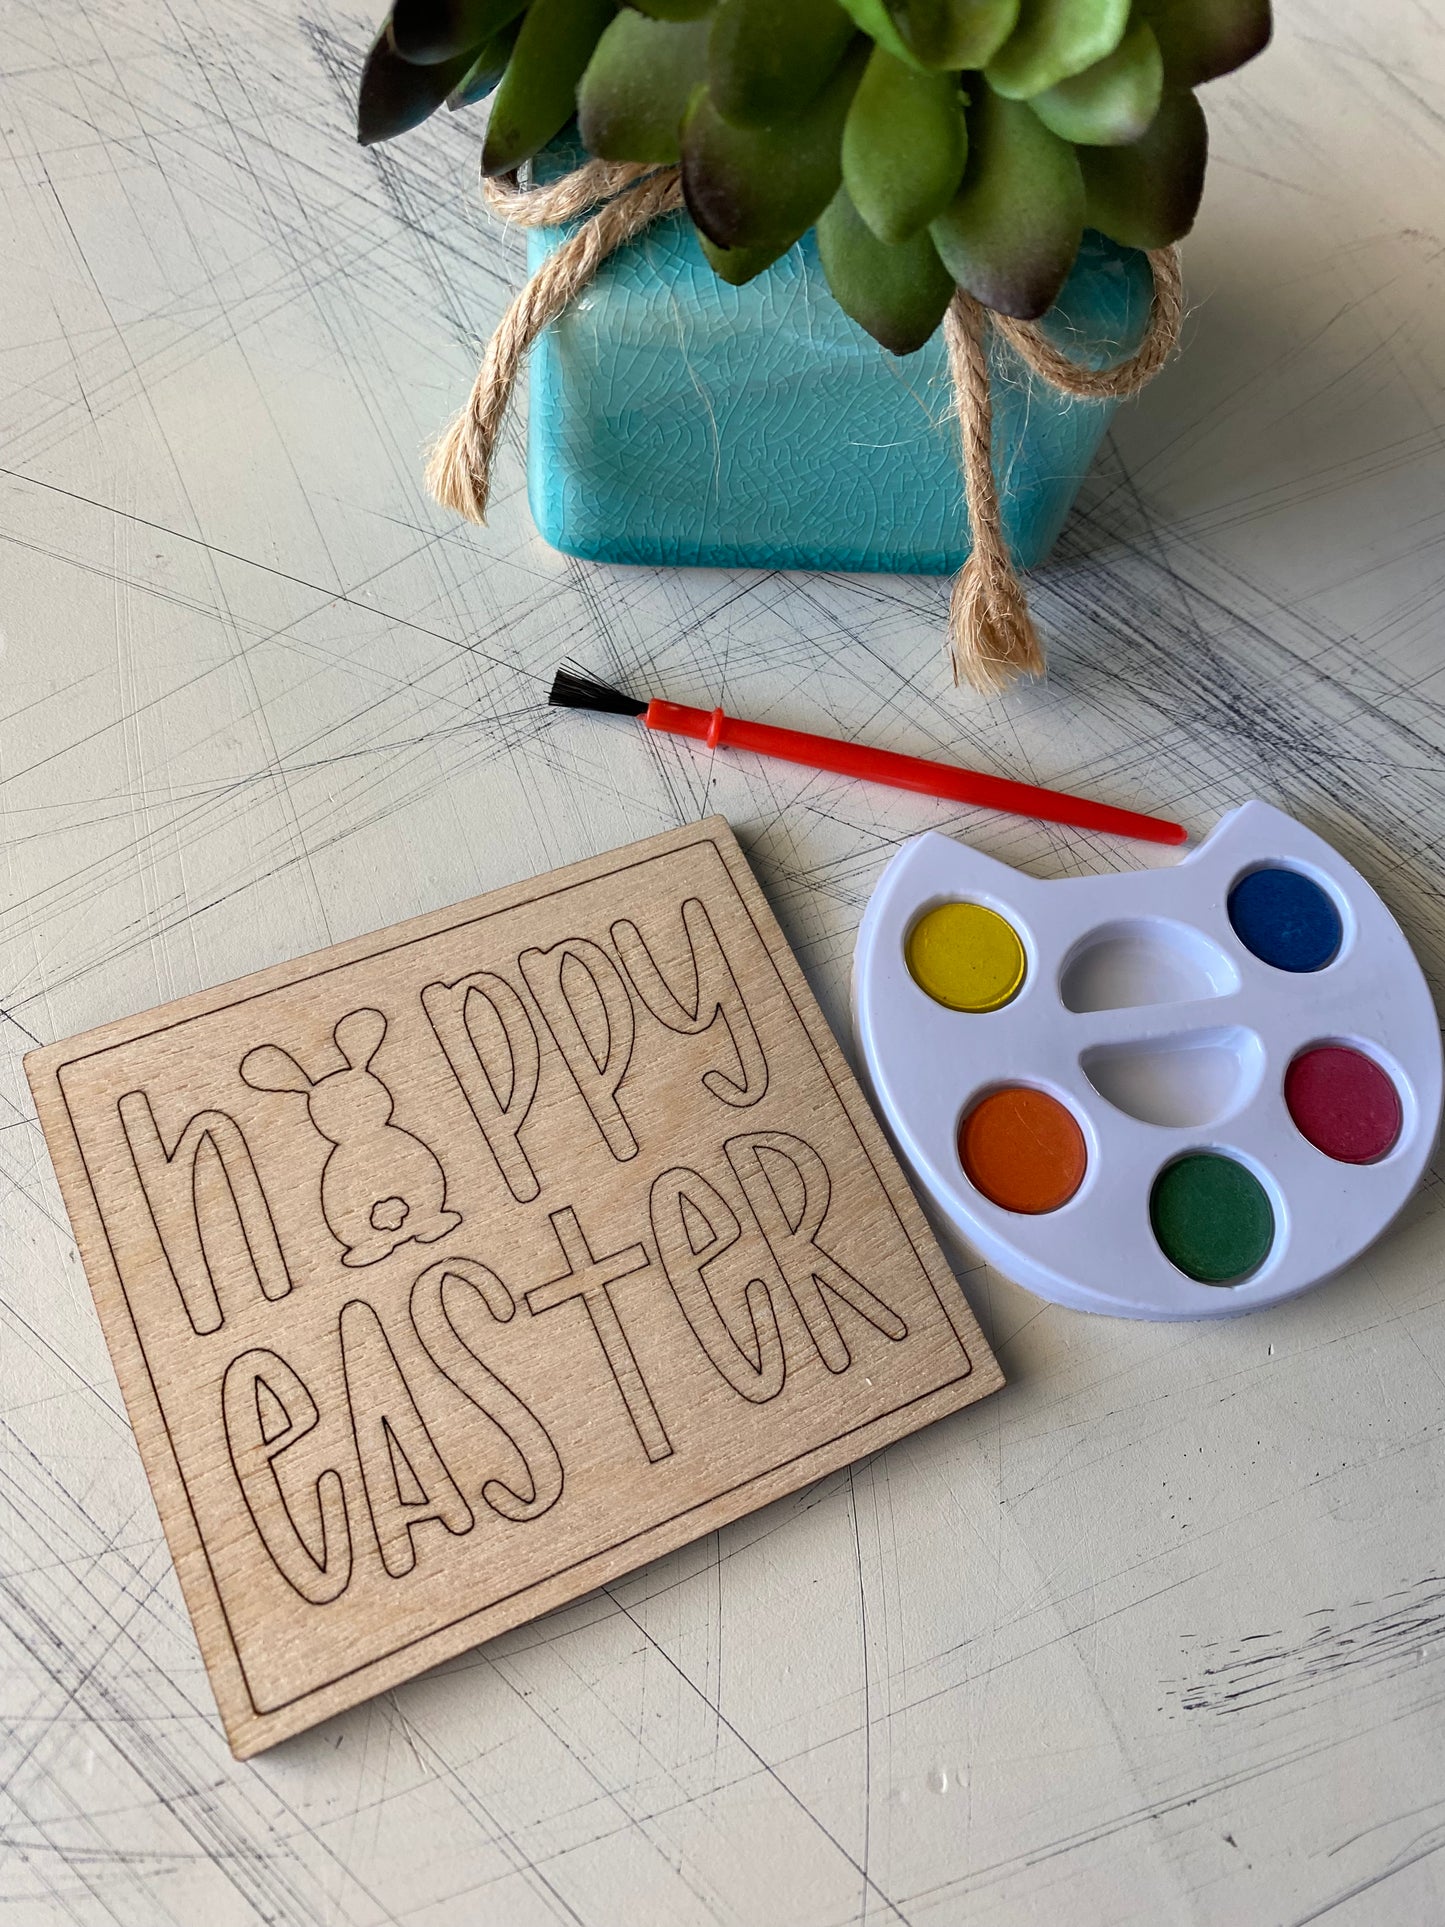 Happy Easter paint kit for kids - basket filler - Novotny Designs